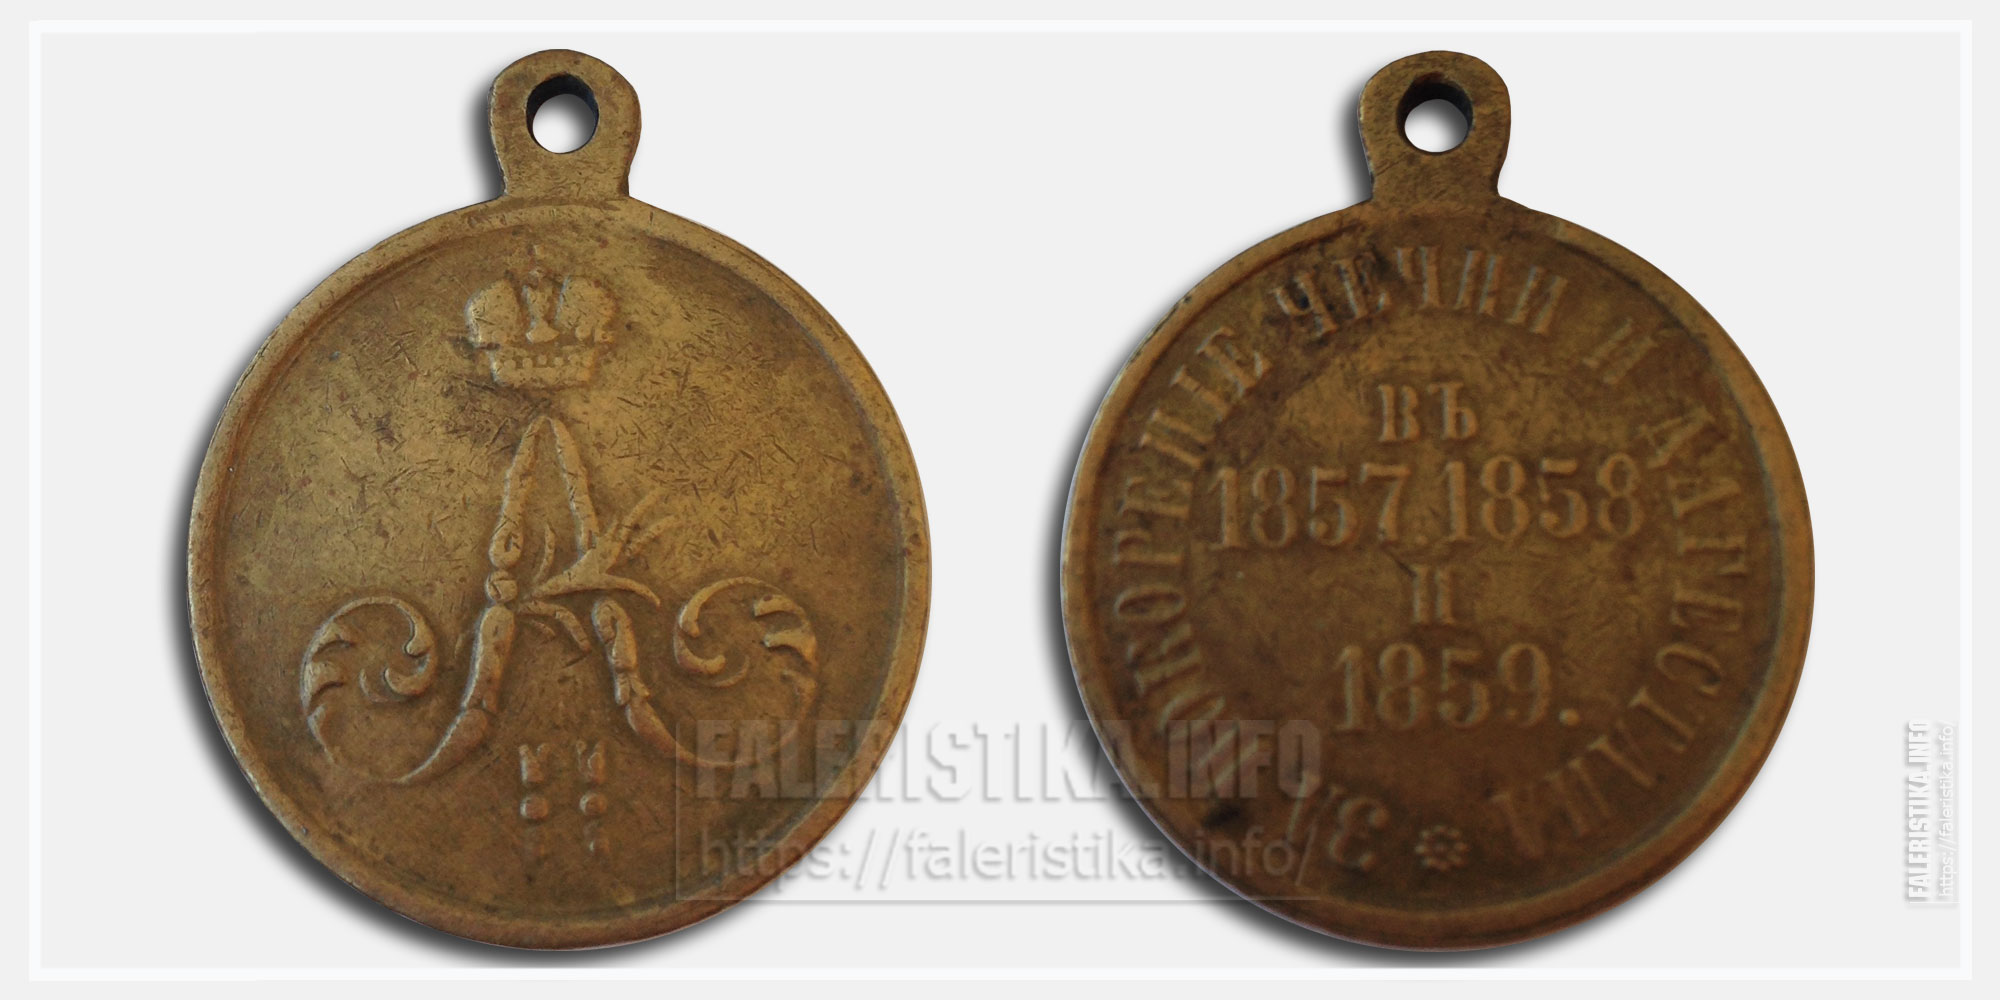 Медаль "За покорение Чечни и Дагестана 1857, 1858 и 1859"